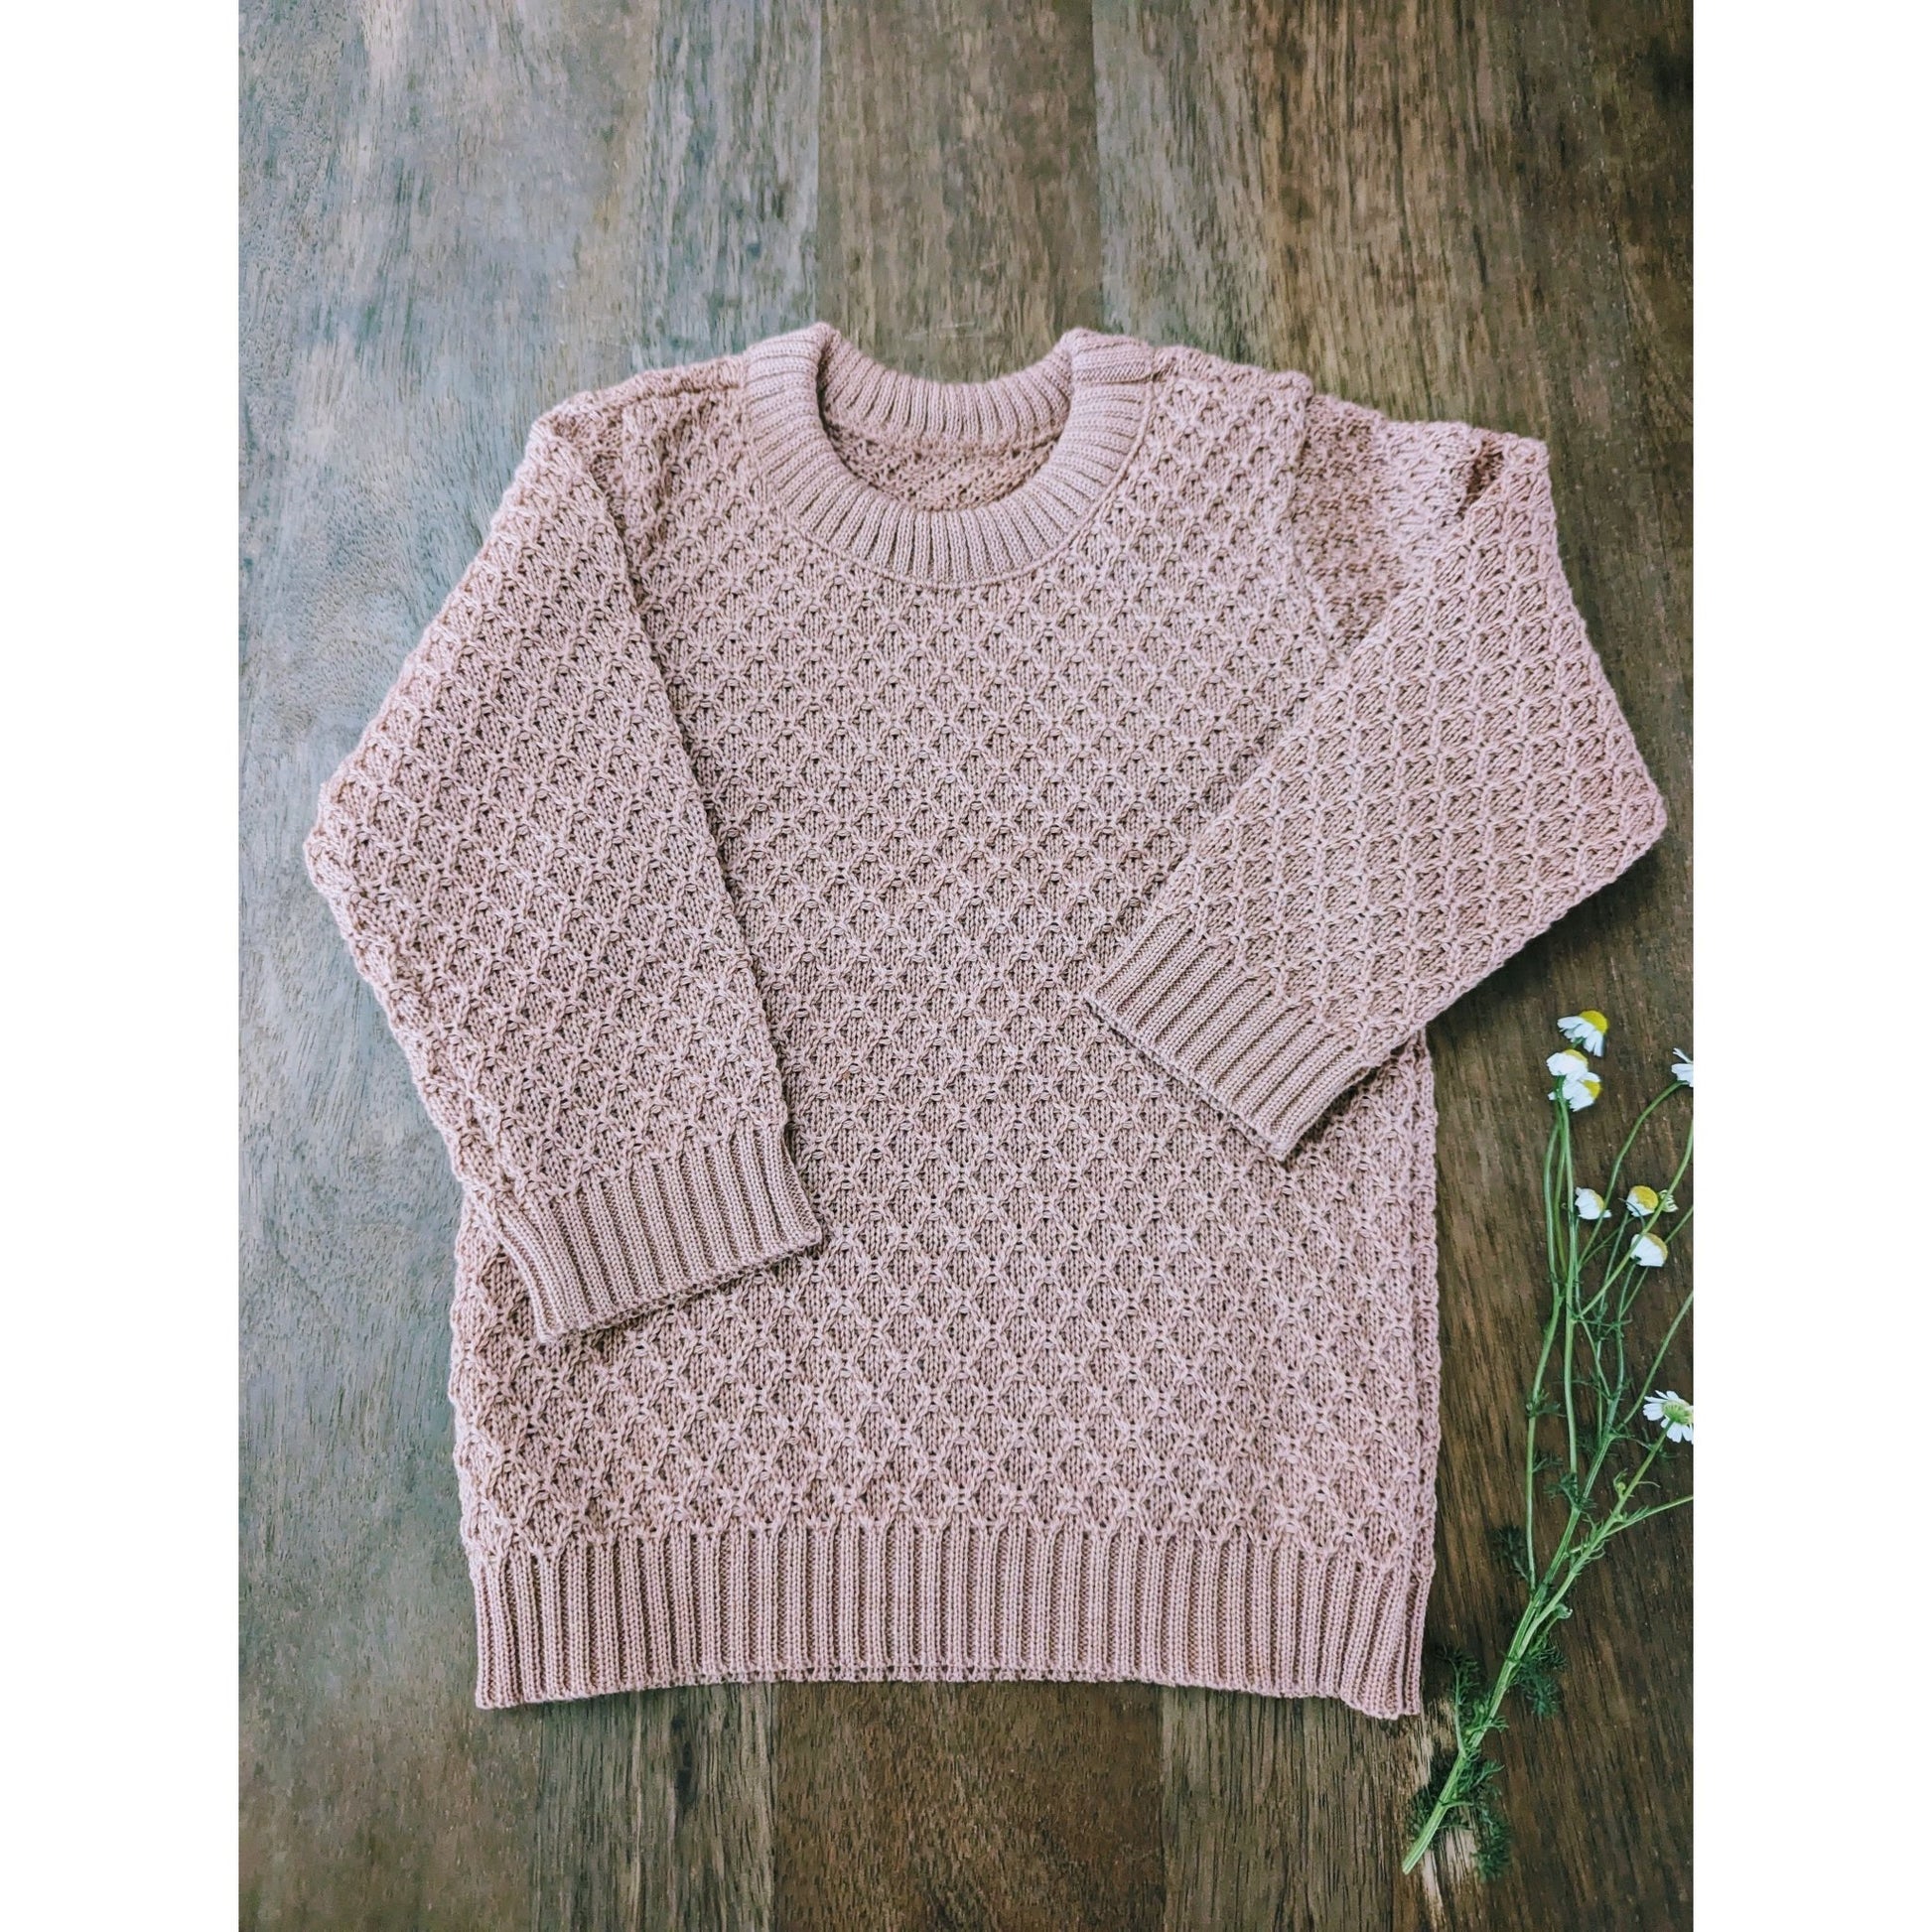 Disana Aran Sweater - Organic Merino Wool – Nature's Wild Child